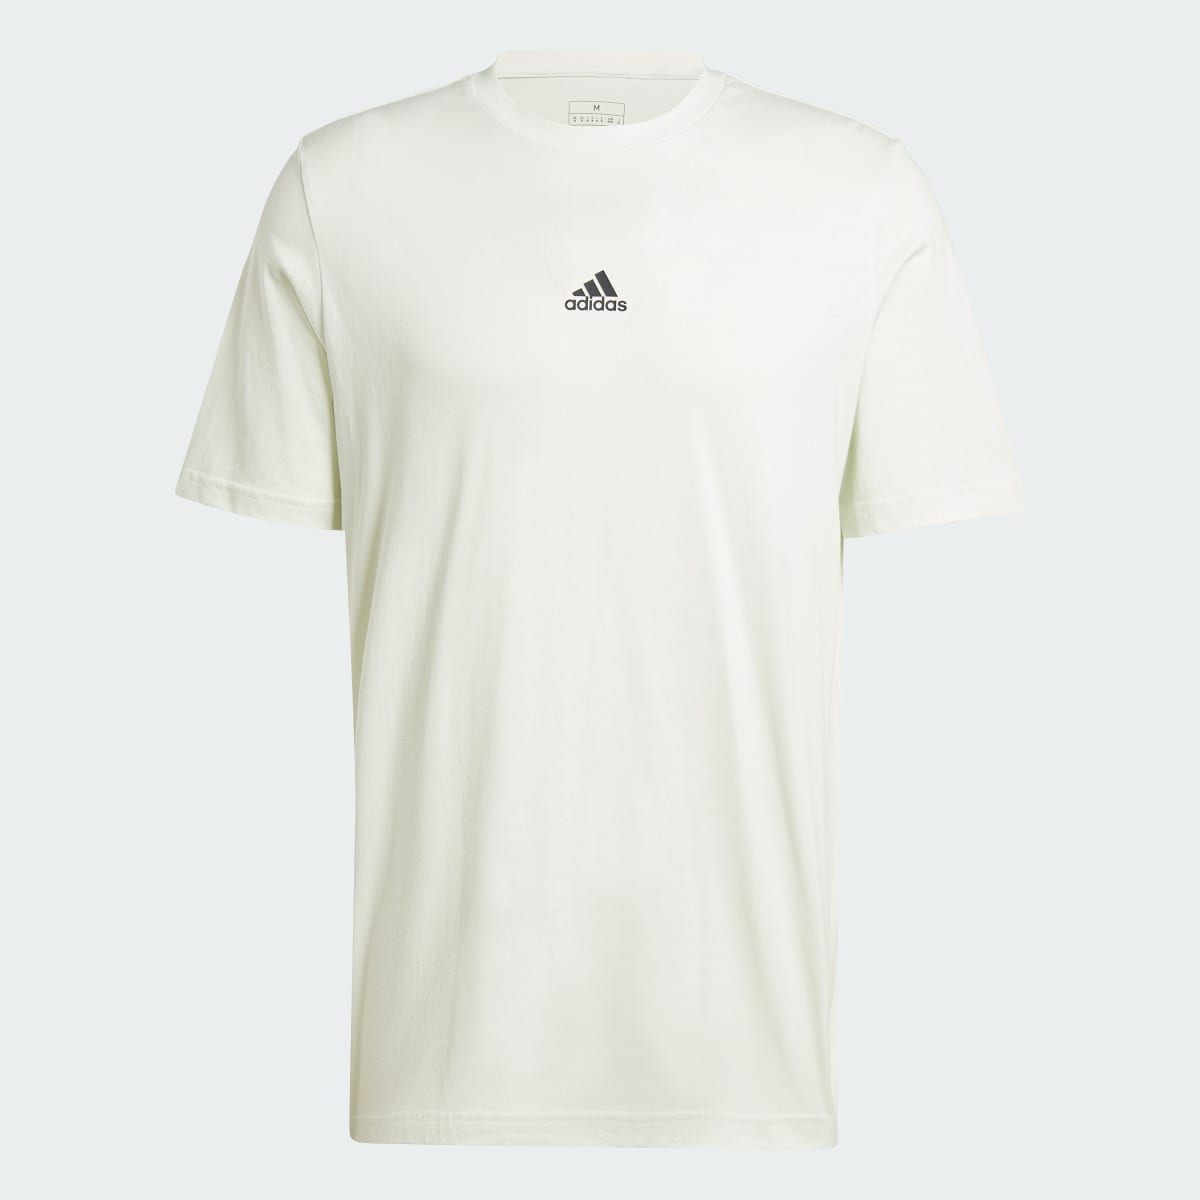 Adidas House of Tiro Graphic T-Shirt. 4